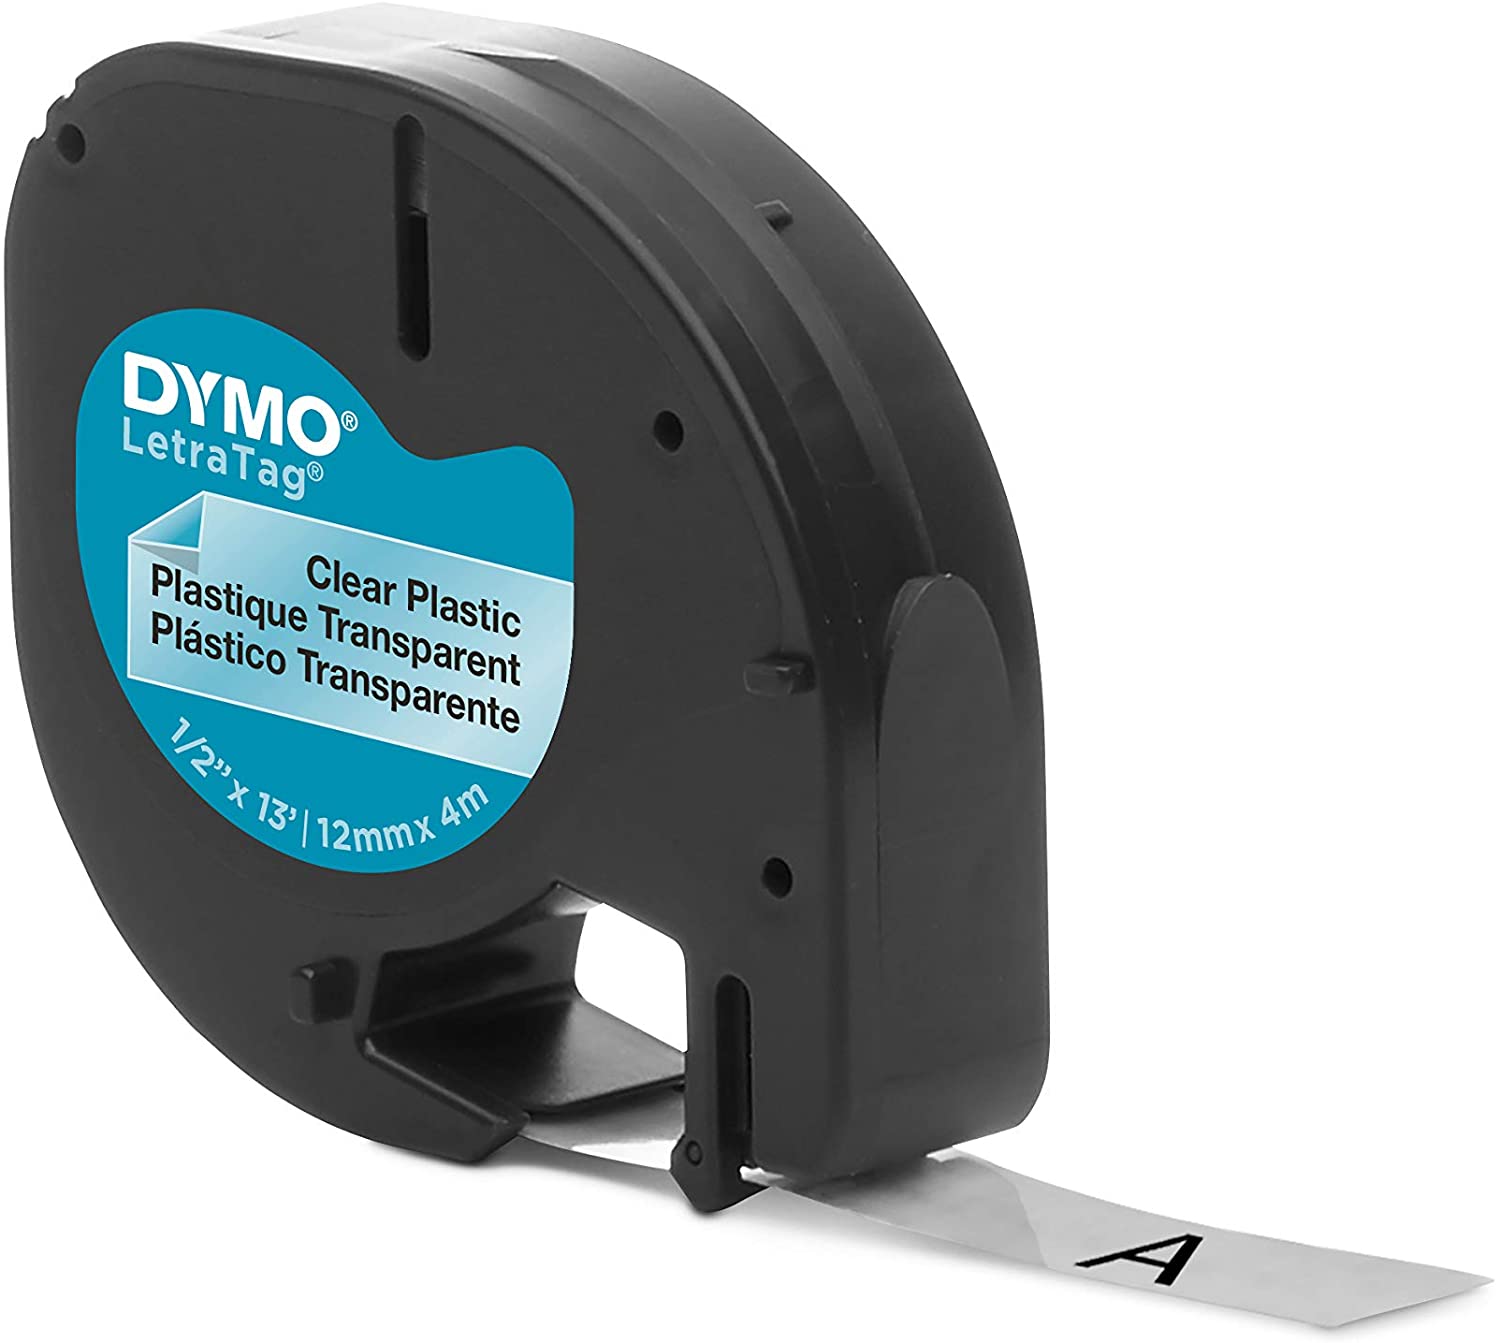 Compatible Dymo Ruban d'Étiquettes pour Dymo LetraTag Ruban Plastique 12mm  x 4m Noir sur Blanc/